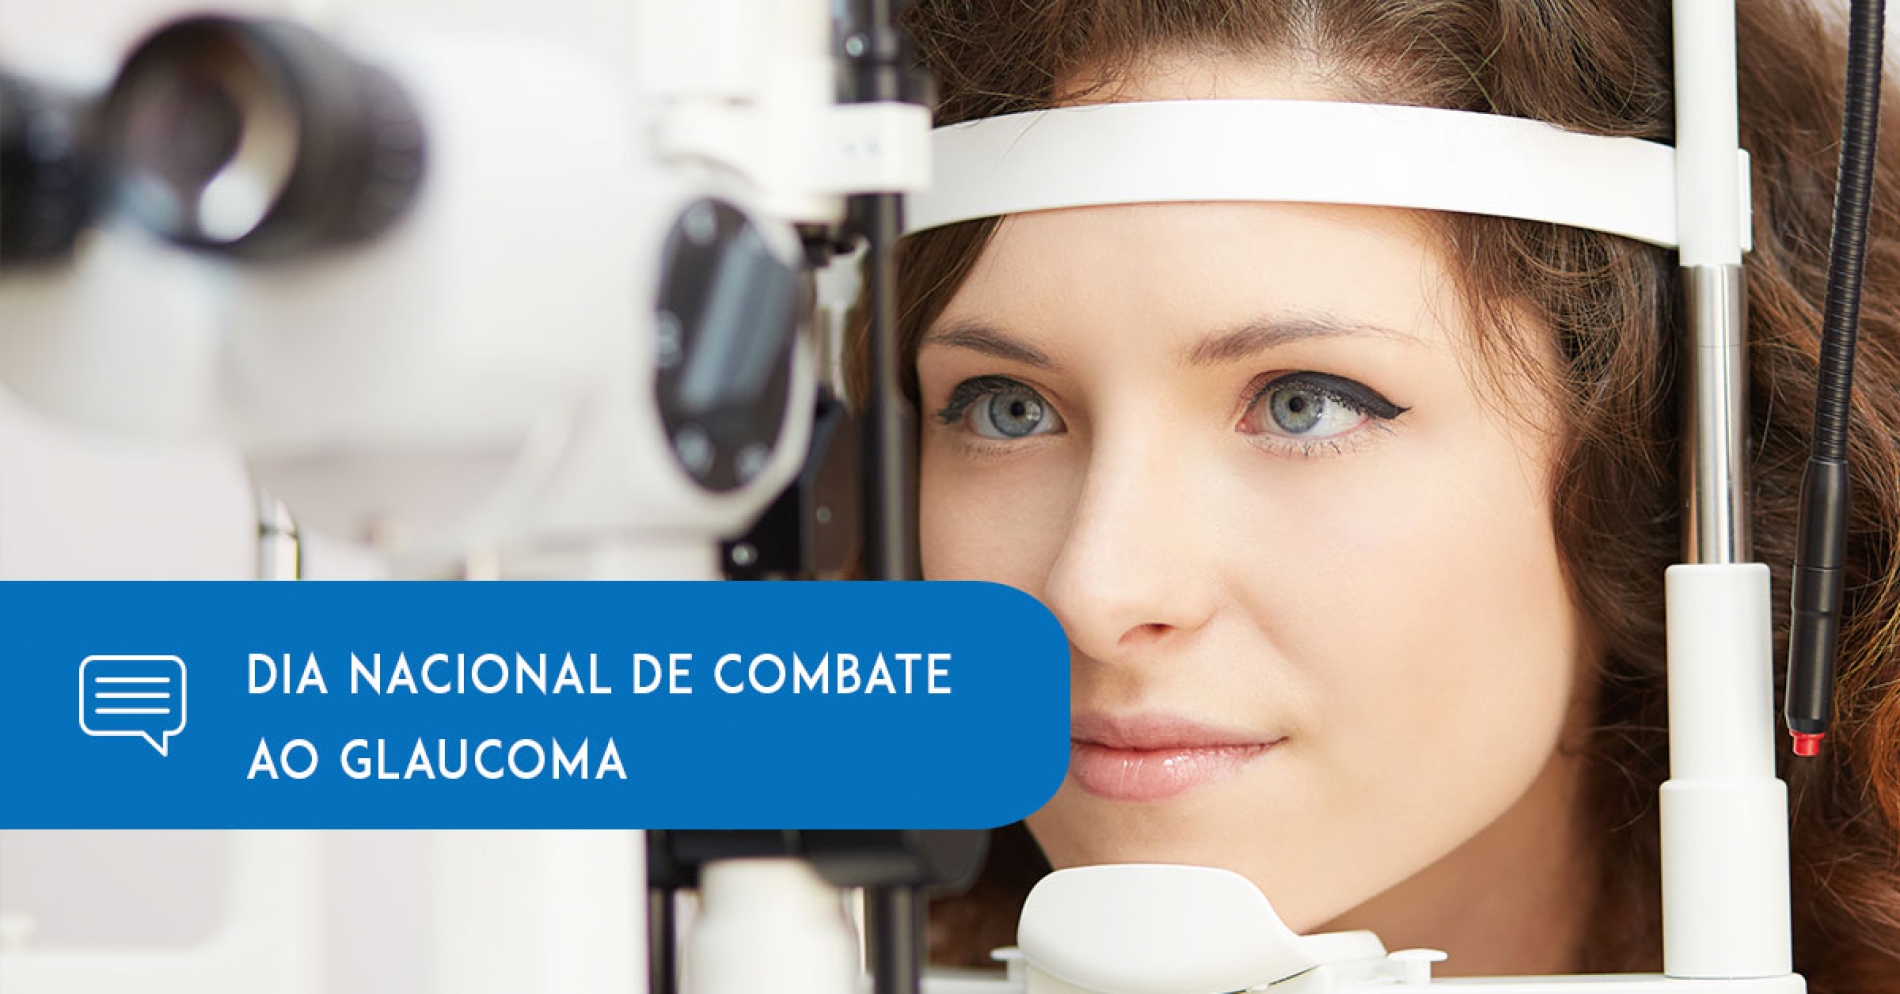 26 de Maio é o Dia Nacional de Combate ao Glaucoma - Eduardo Paulino